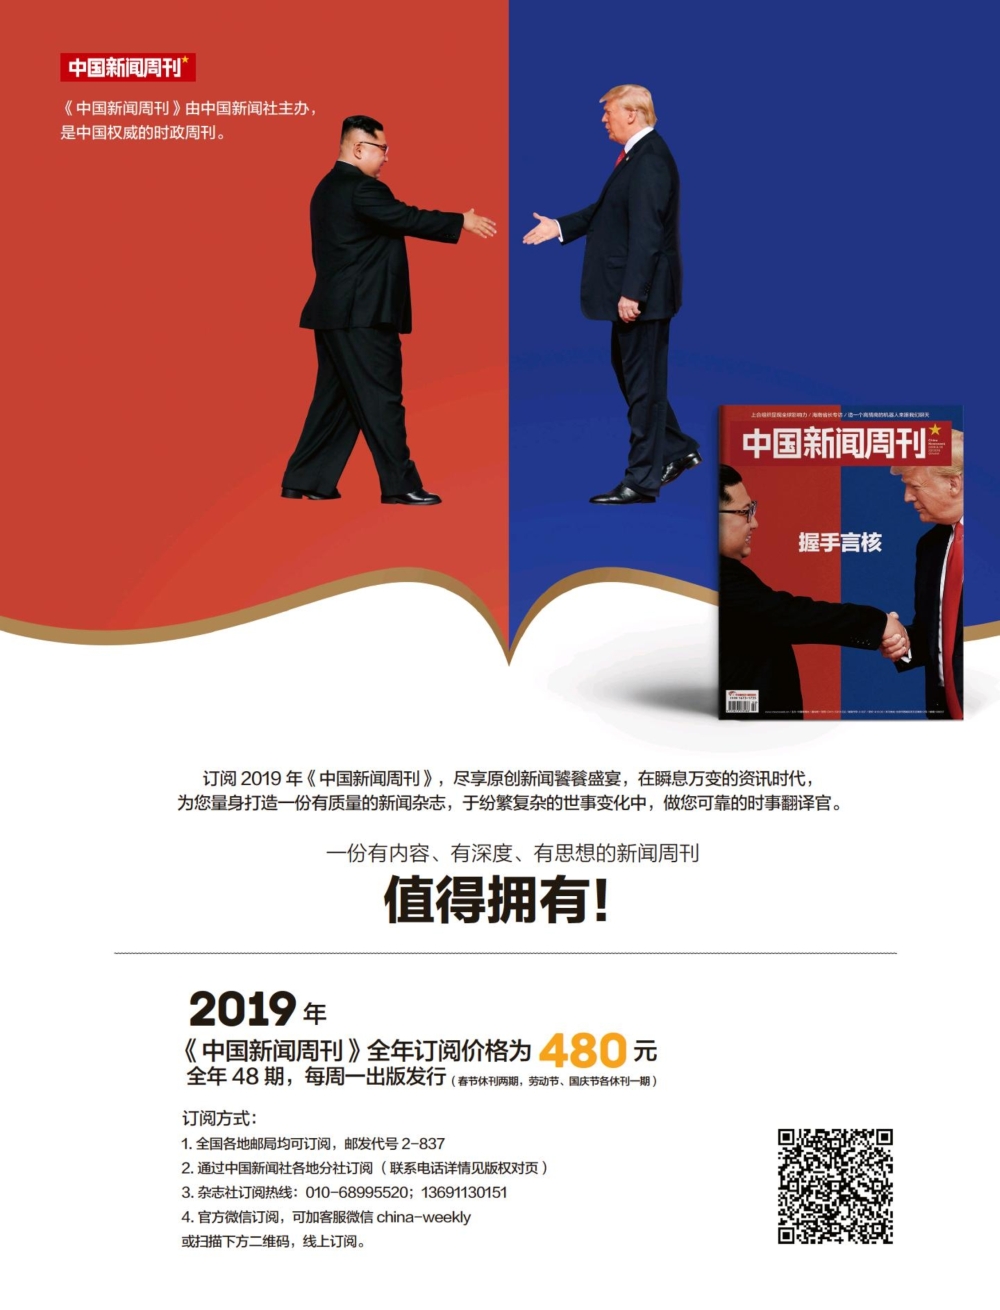 留园网 中国新闻周刊 China Newsweek 19年第11期 总第3期 92图 6park Com